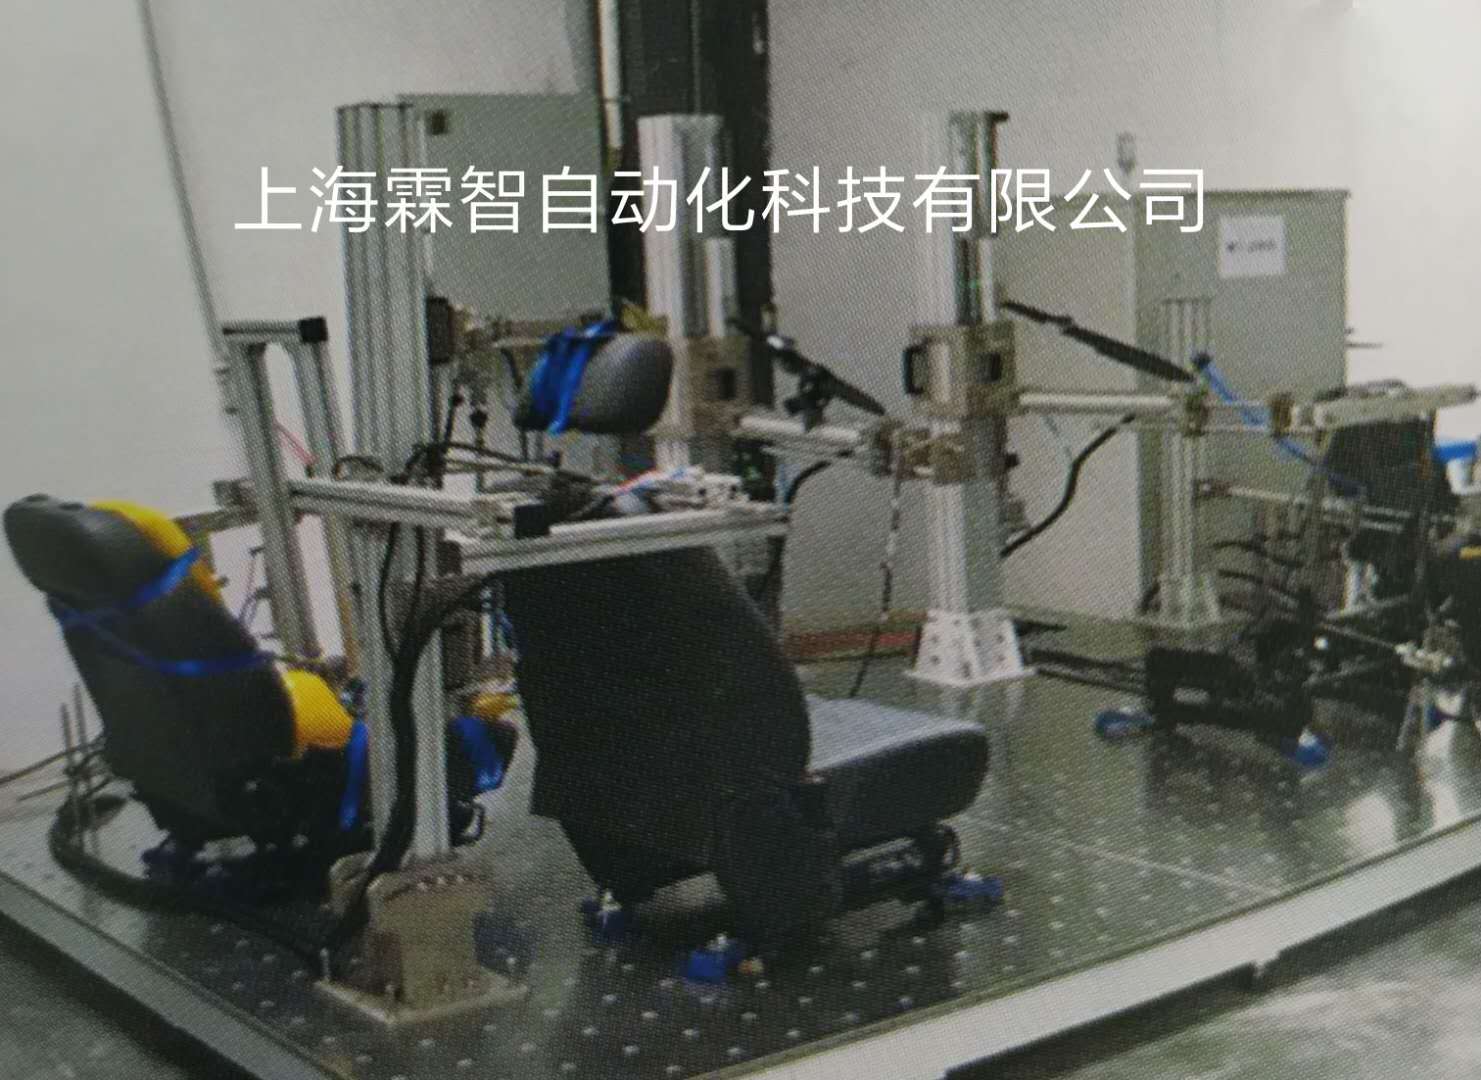 上海霖智科技座椅及零部件检测设备